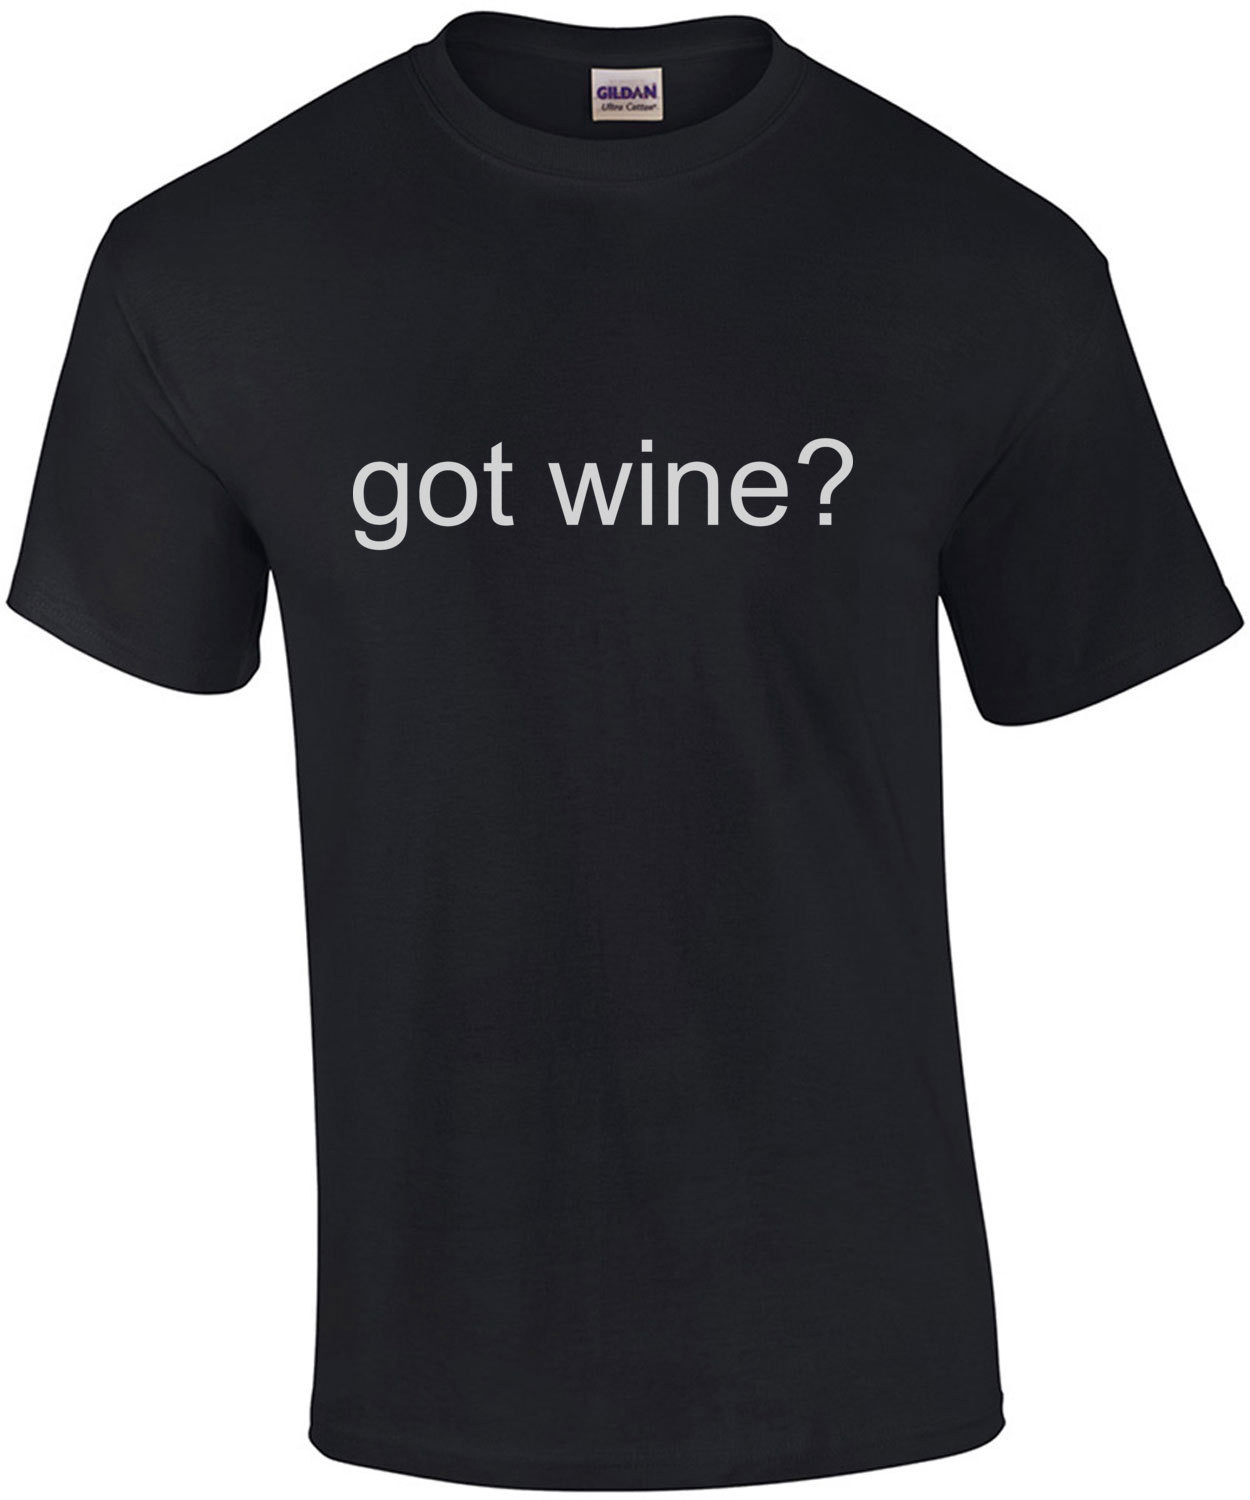 Got wine? T-Shirt